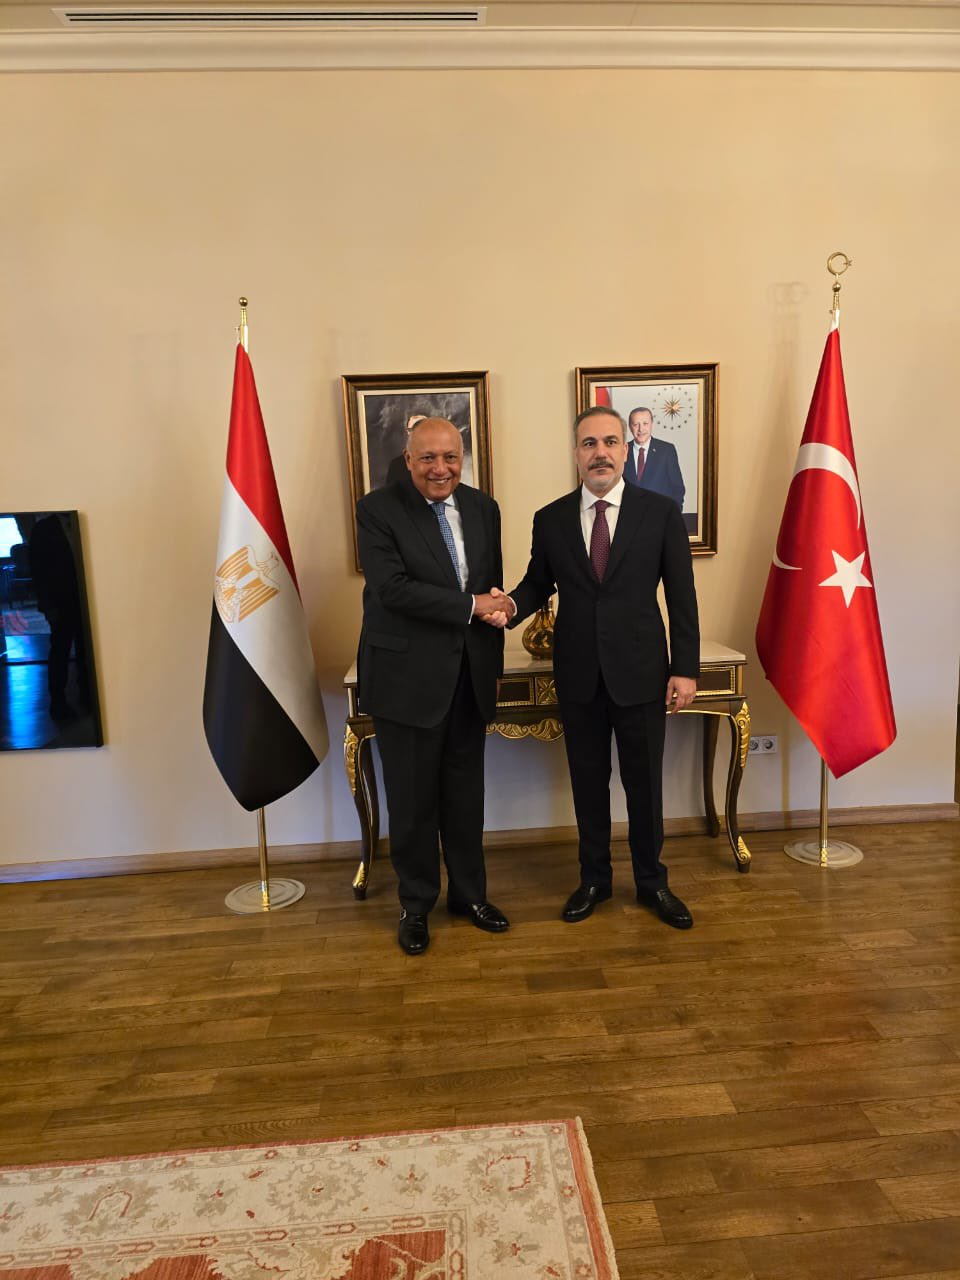 وزير الخارجية المصري سامح شكري مع نظيره التركي هاكان فيدان (صفحة المتحدث بإسم وزارة الخارجية المصرية على إكس)